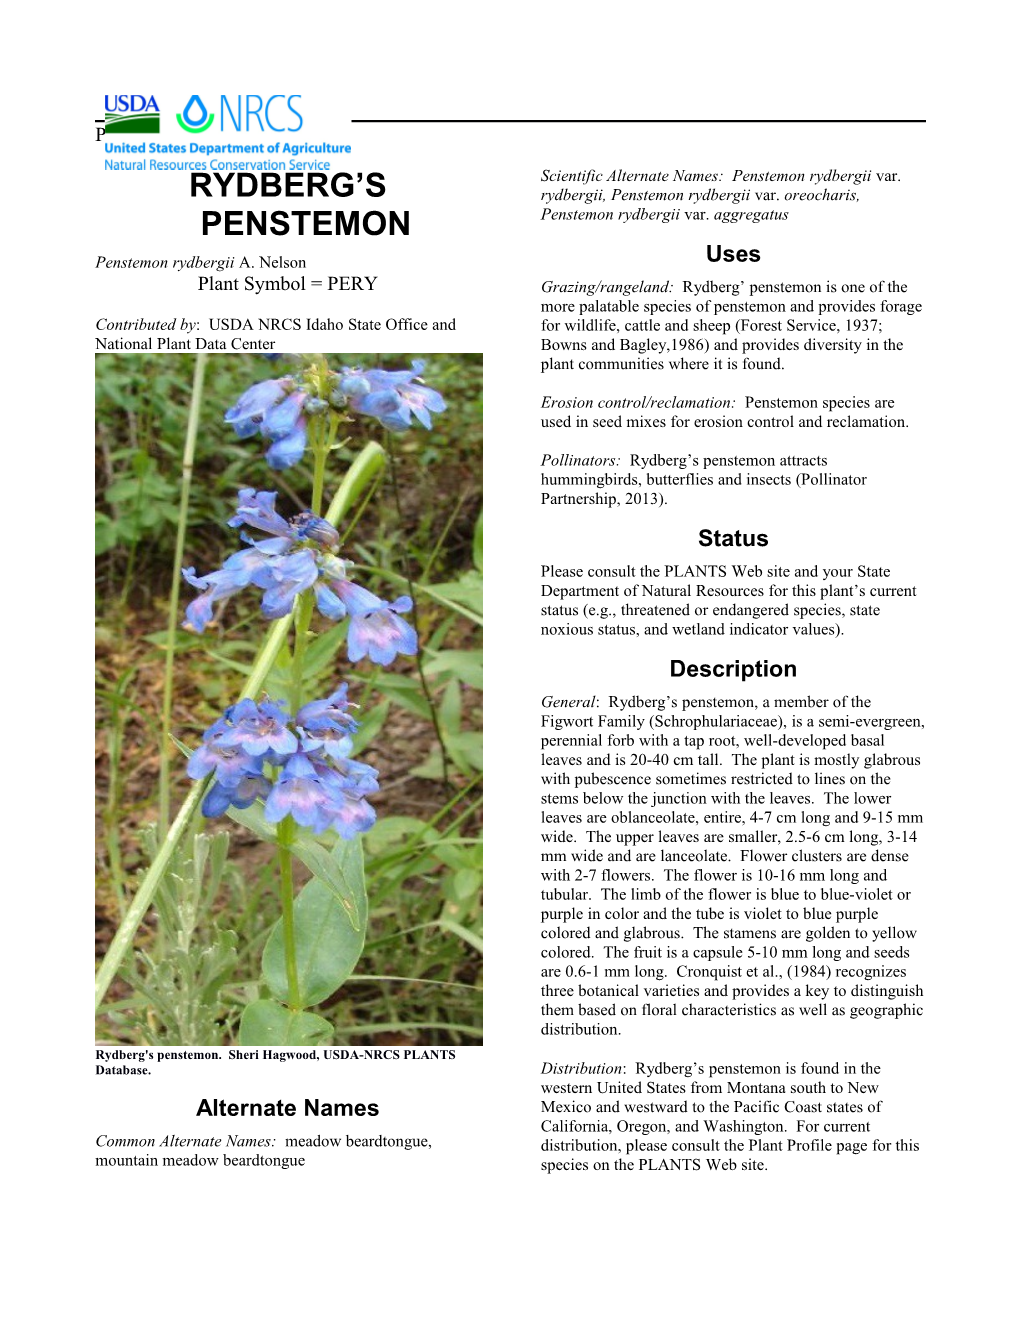 Plant Guide for Rydberg's Penstemon (Penstemon Rydbergii)